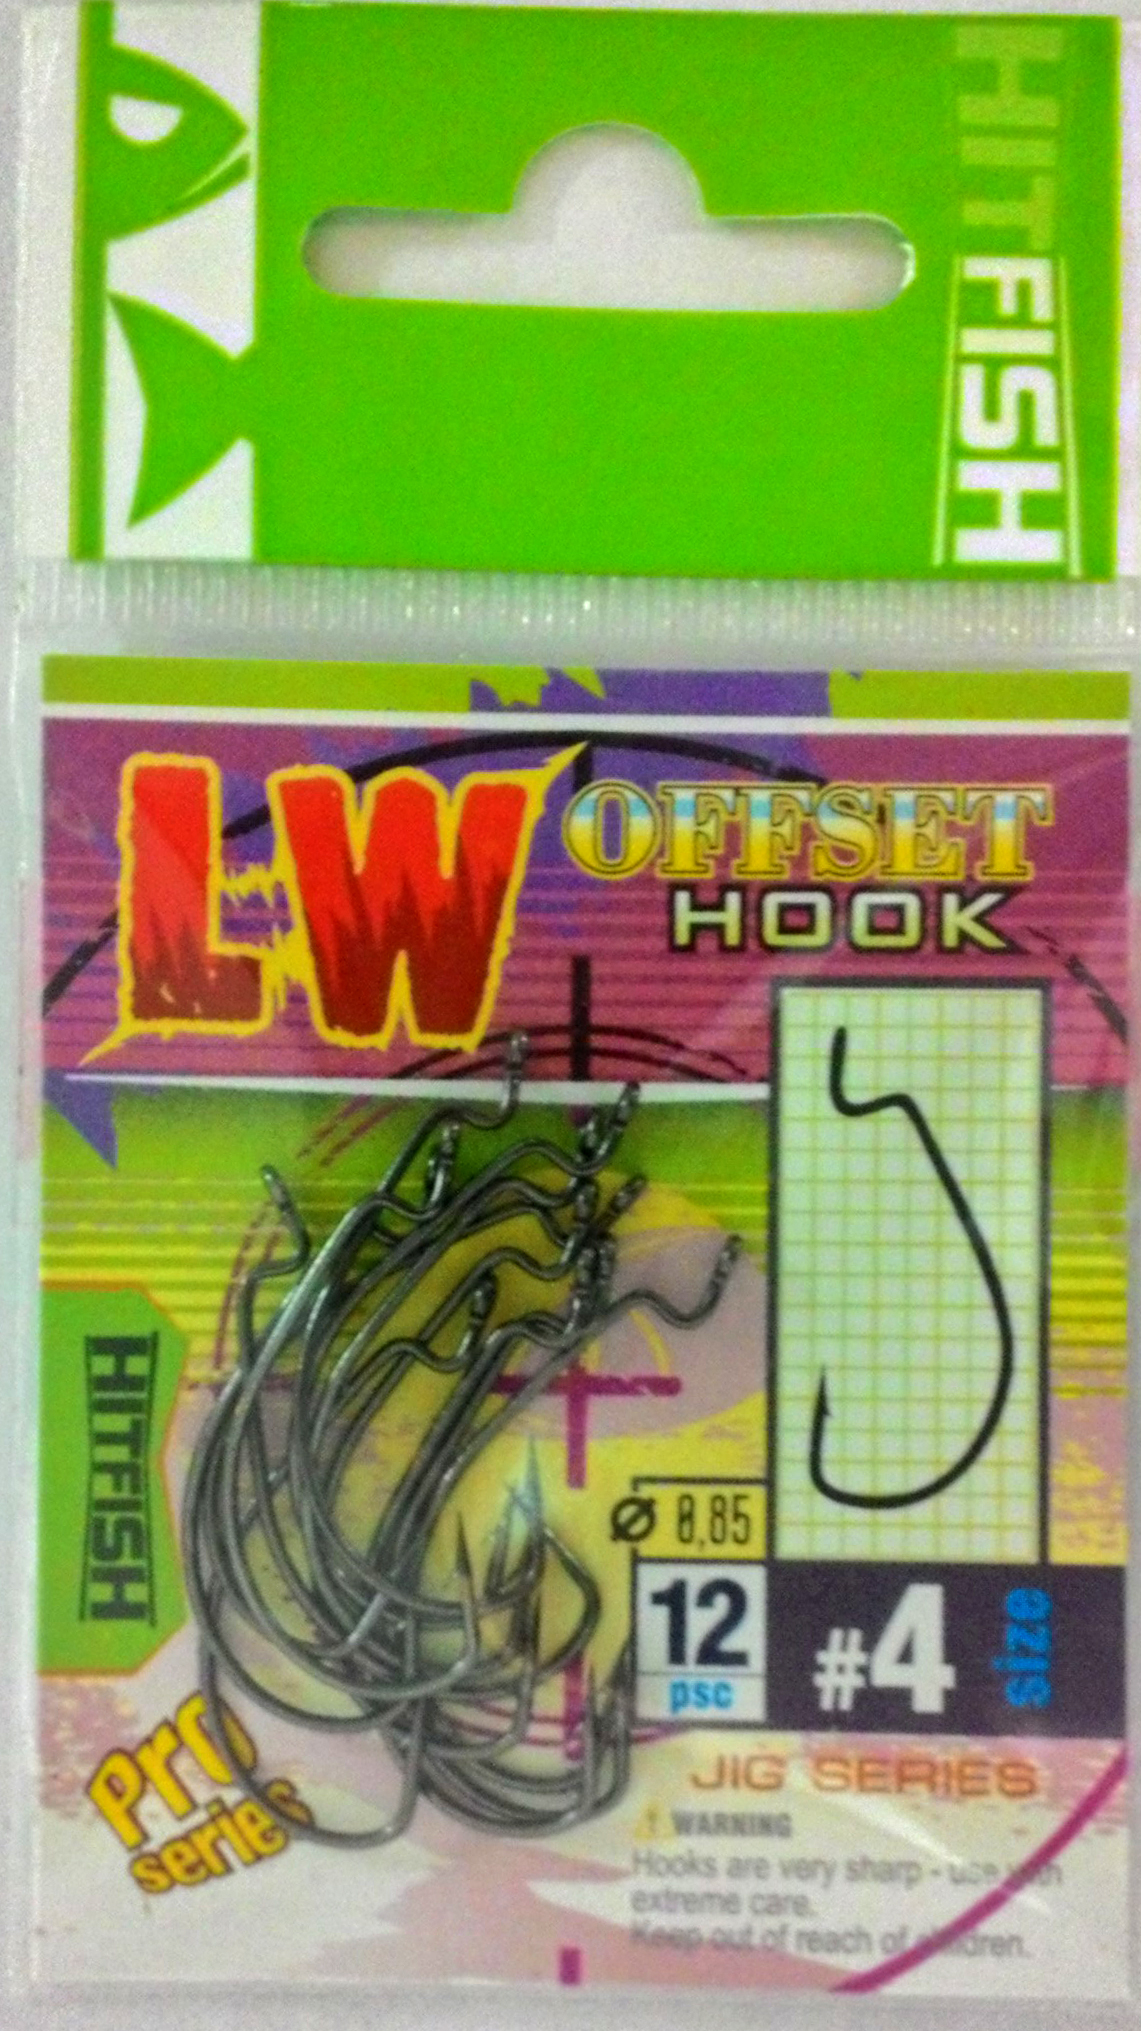 Каталог Офсетный крючок HITFISH LW Offset Hook от производителя Hitfish